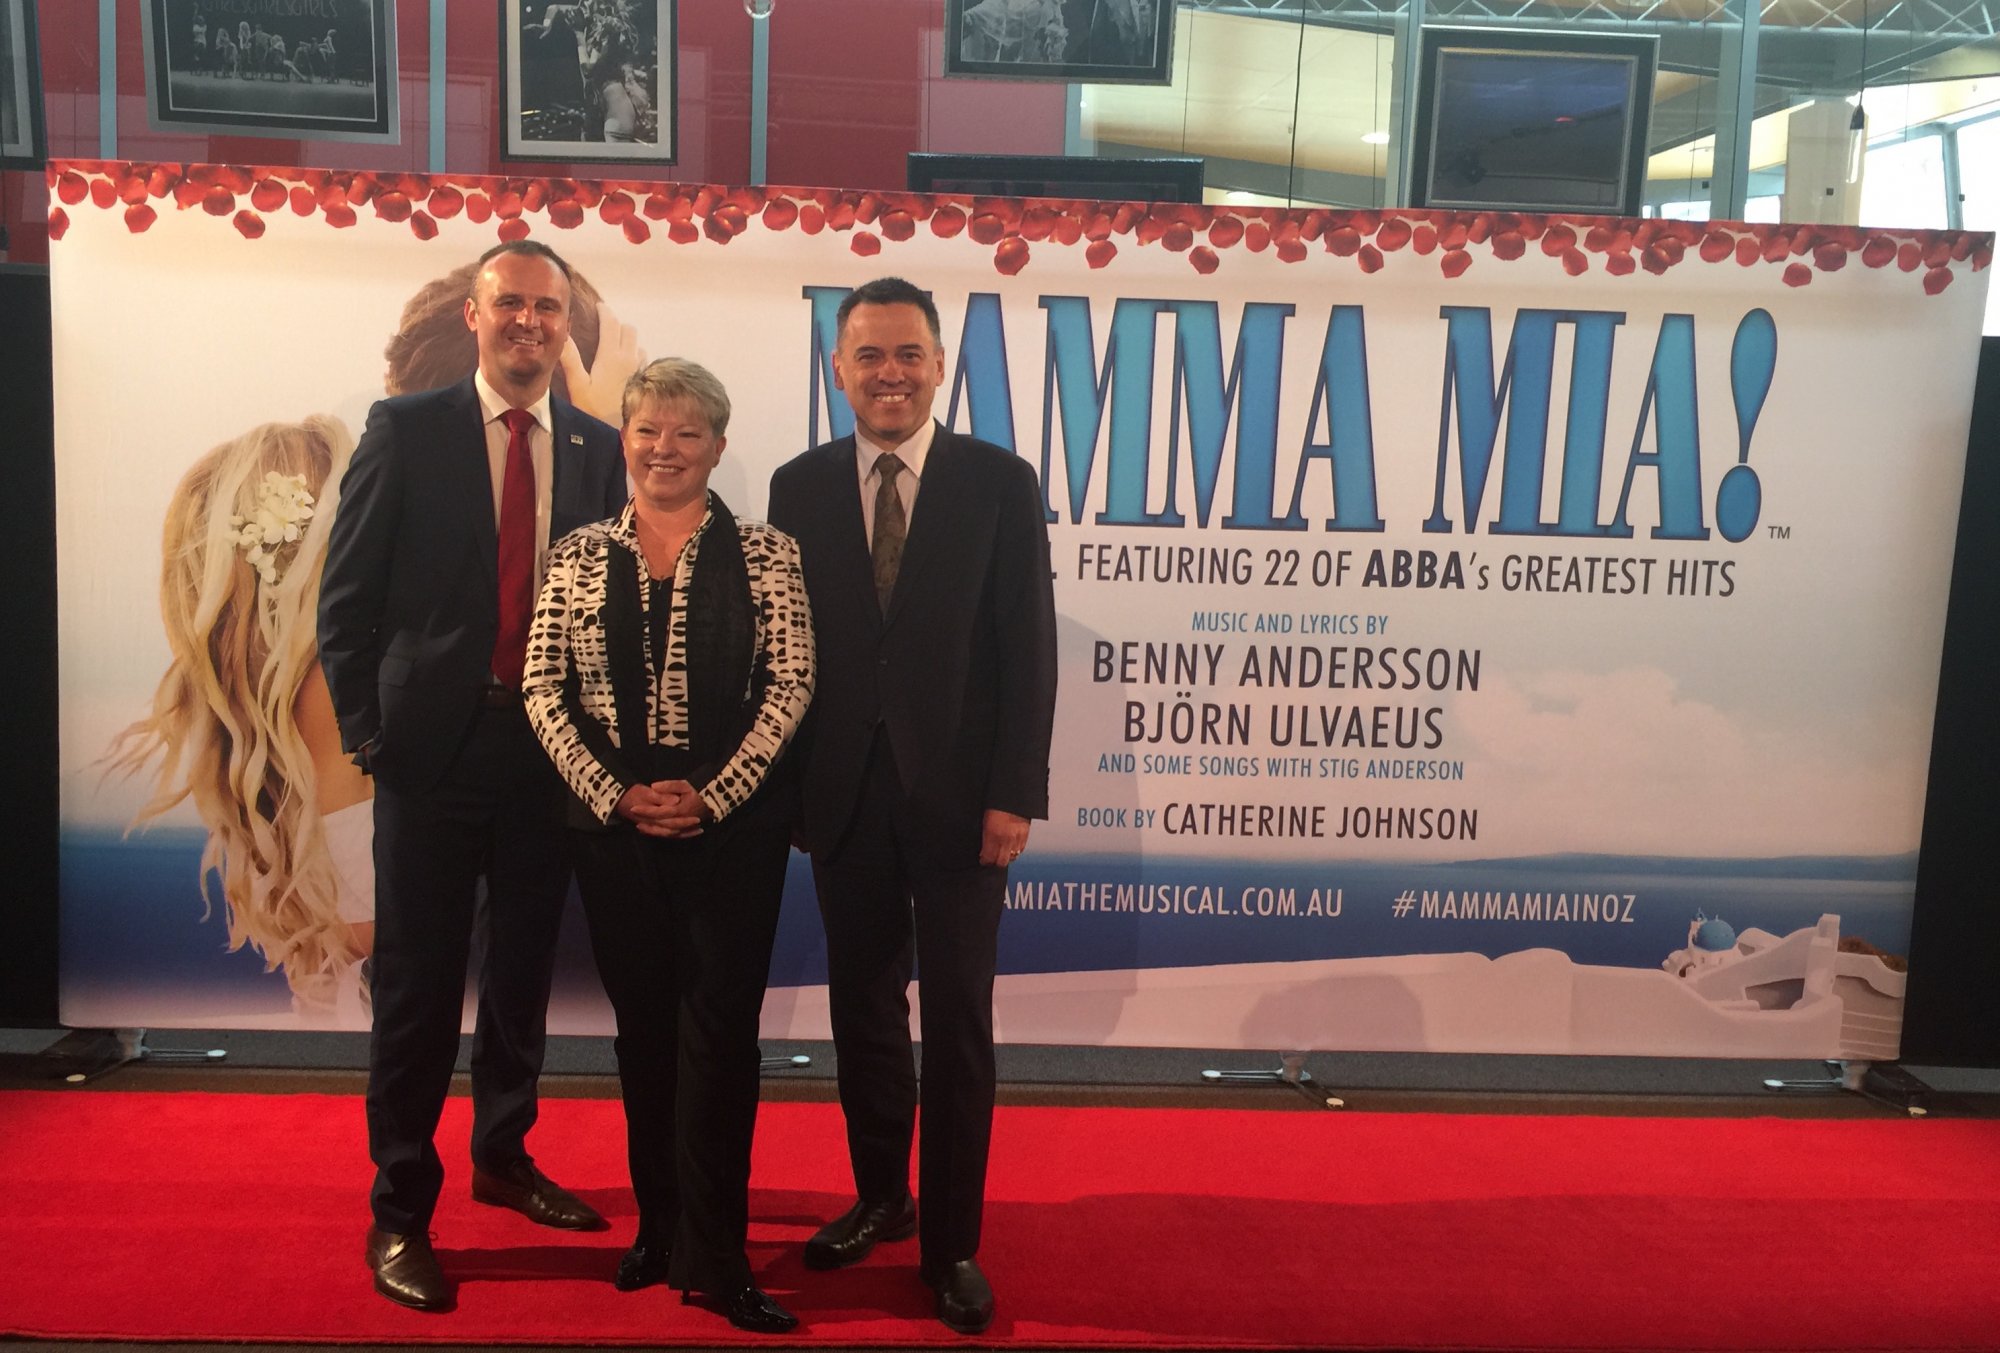 Will ABBA stars visit for Mamma Mia premiere?